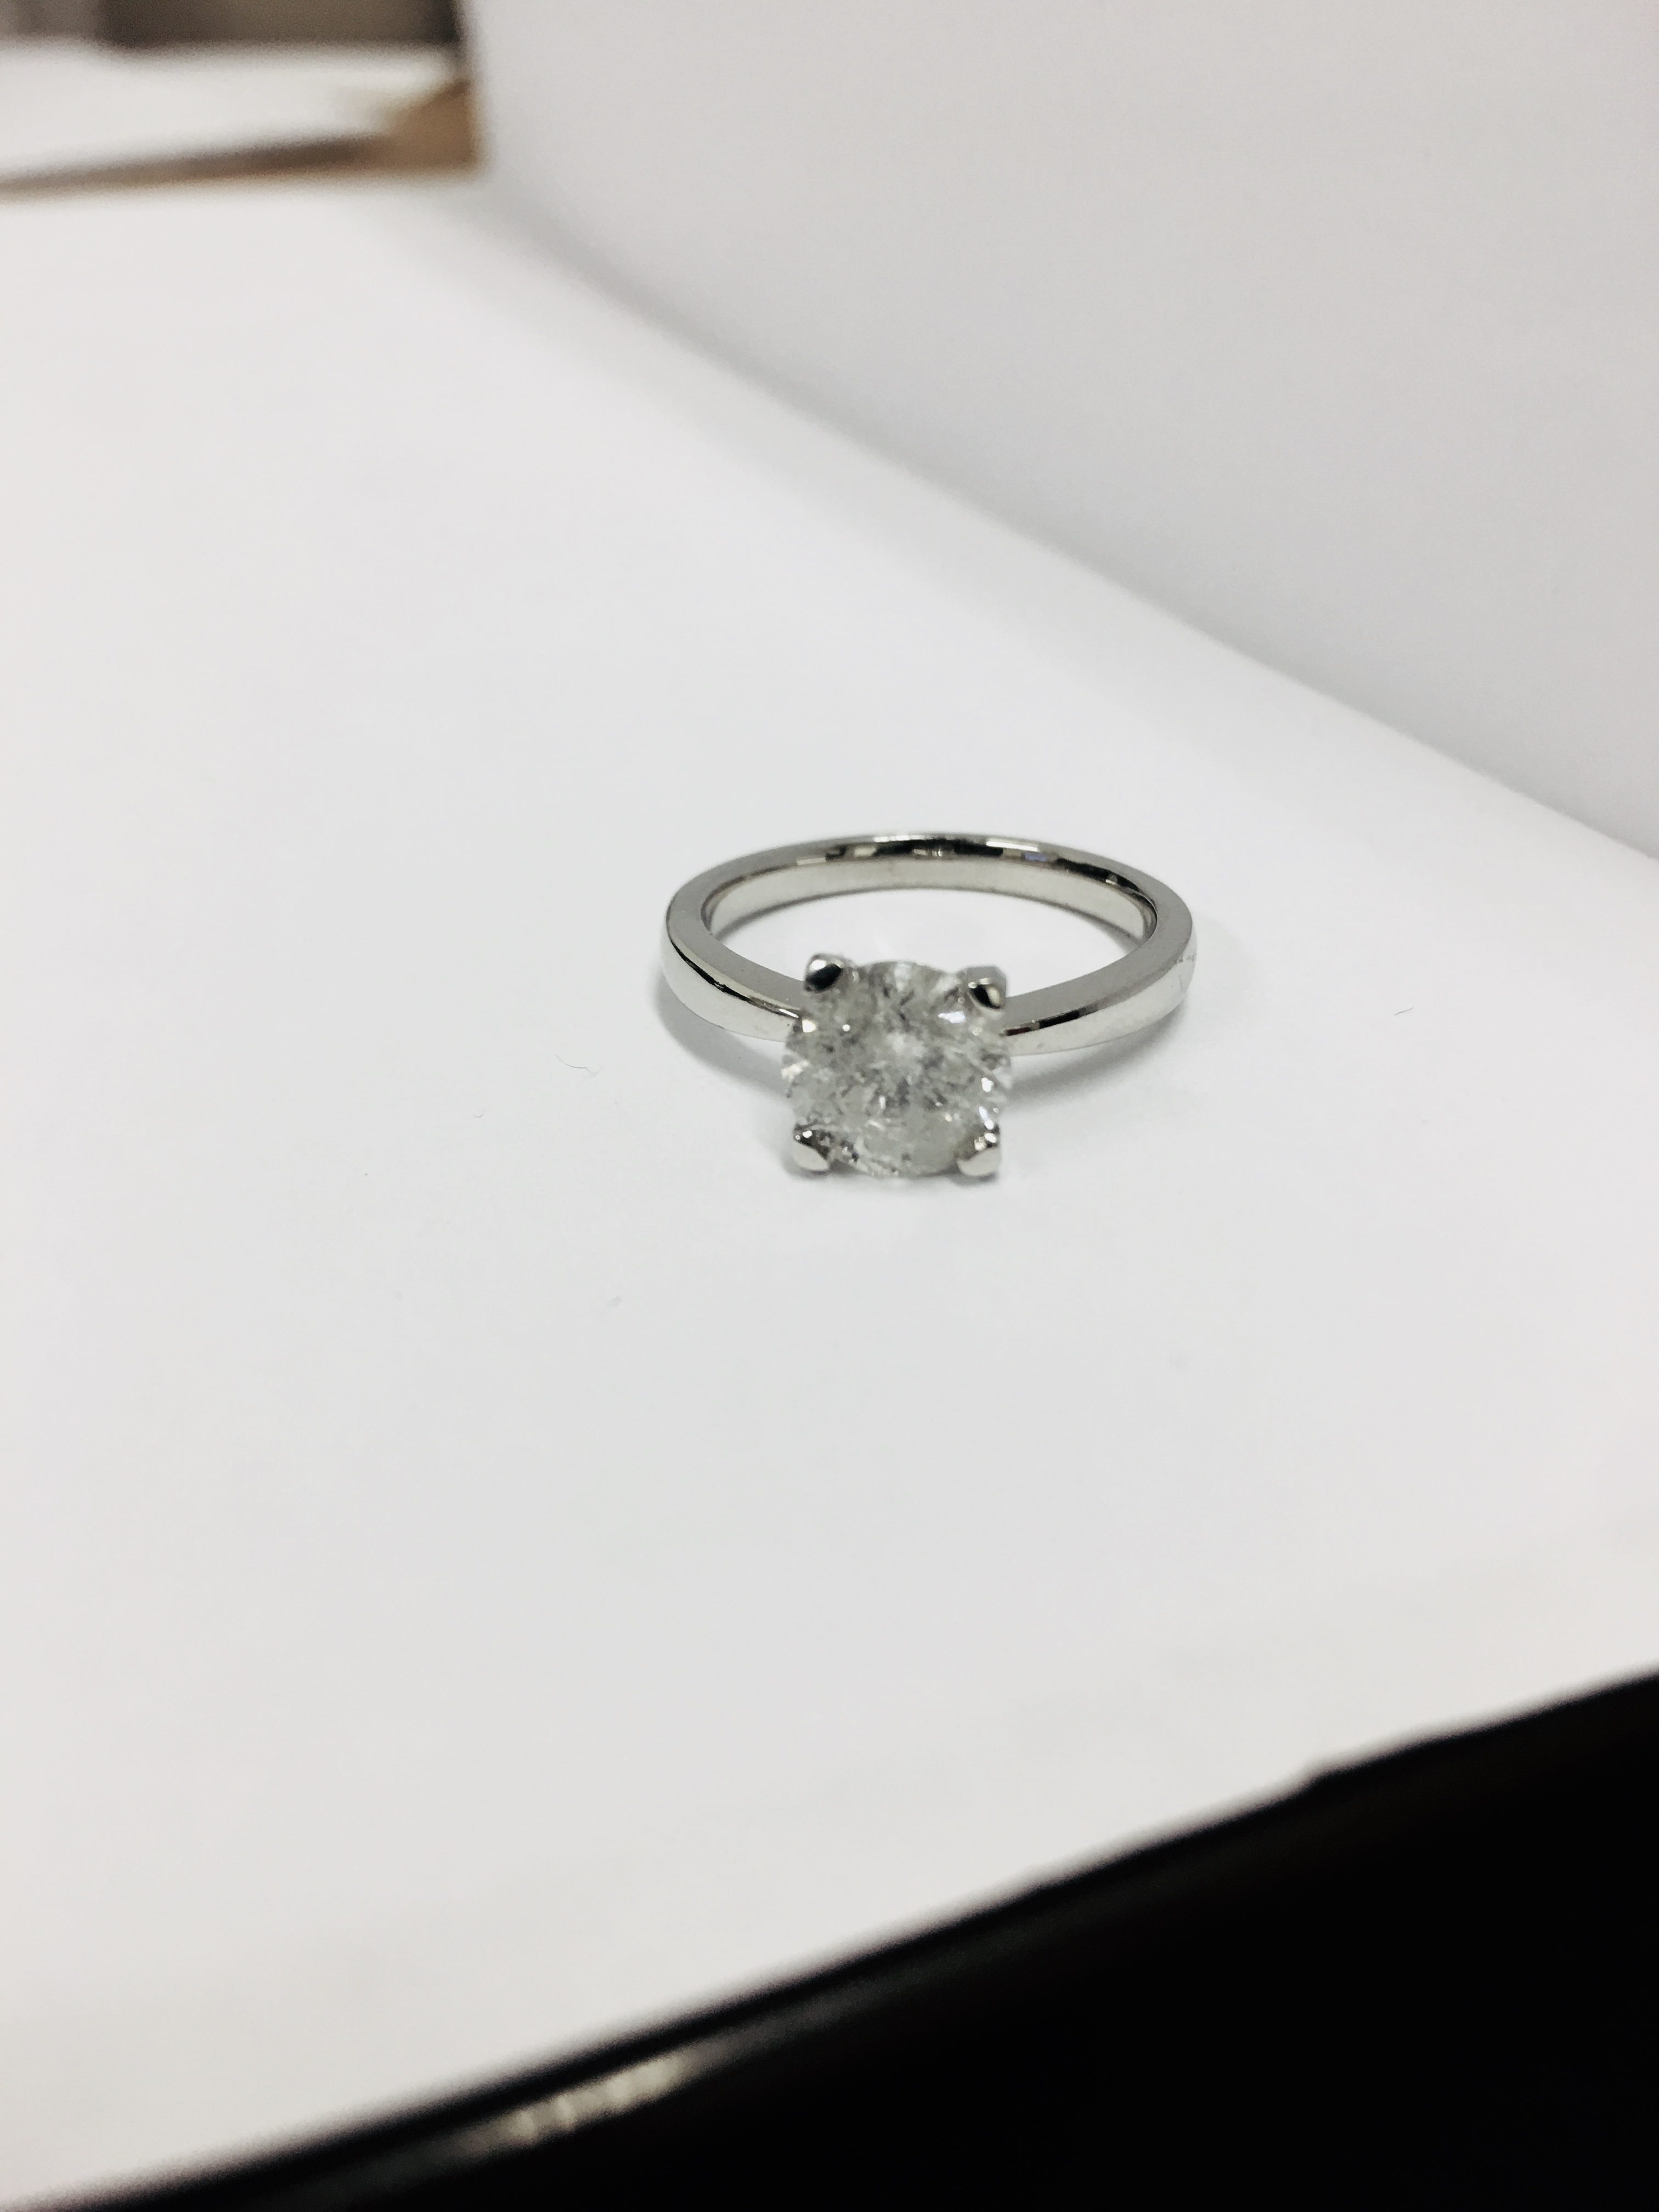 2.08ct diamond solitaire ring set in platinum - Image 3 of 6